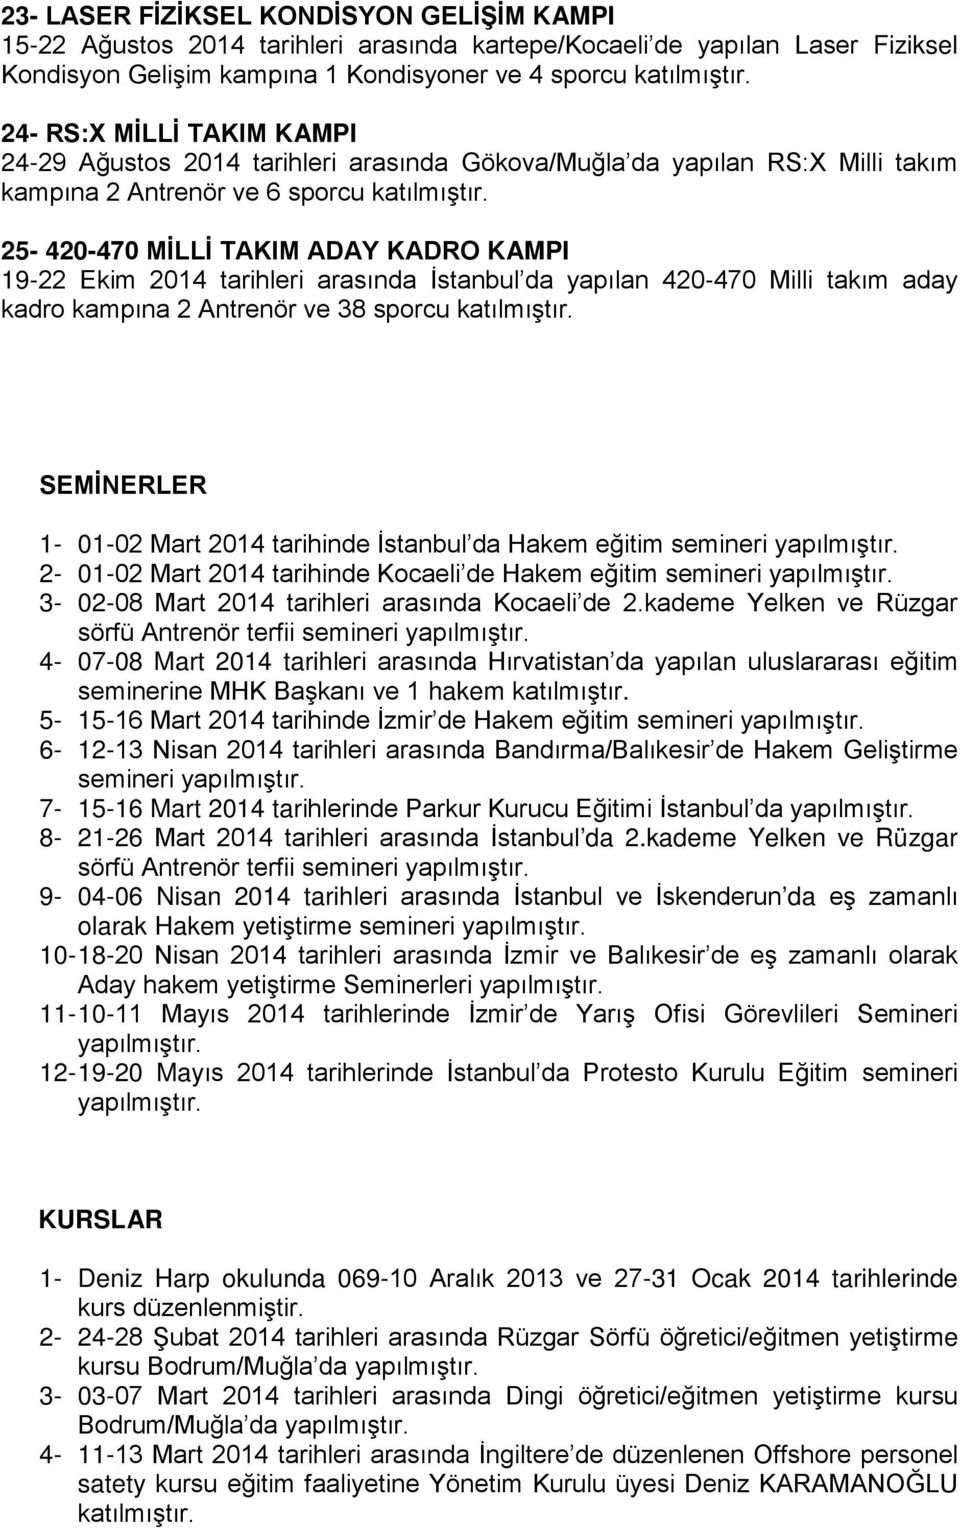 25-420-470 MİLLİ TAKIM ADAY KADRO KAMPI 19-22 Ekim 2014 tarihleri arasında İstanbul da yapılan 420-470 Milli takım aday kadro kampına 2 Antrenör ve 38 sporcu katılmıştır.